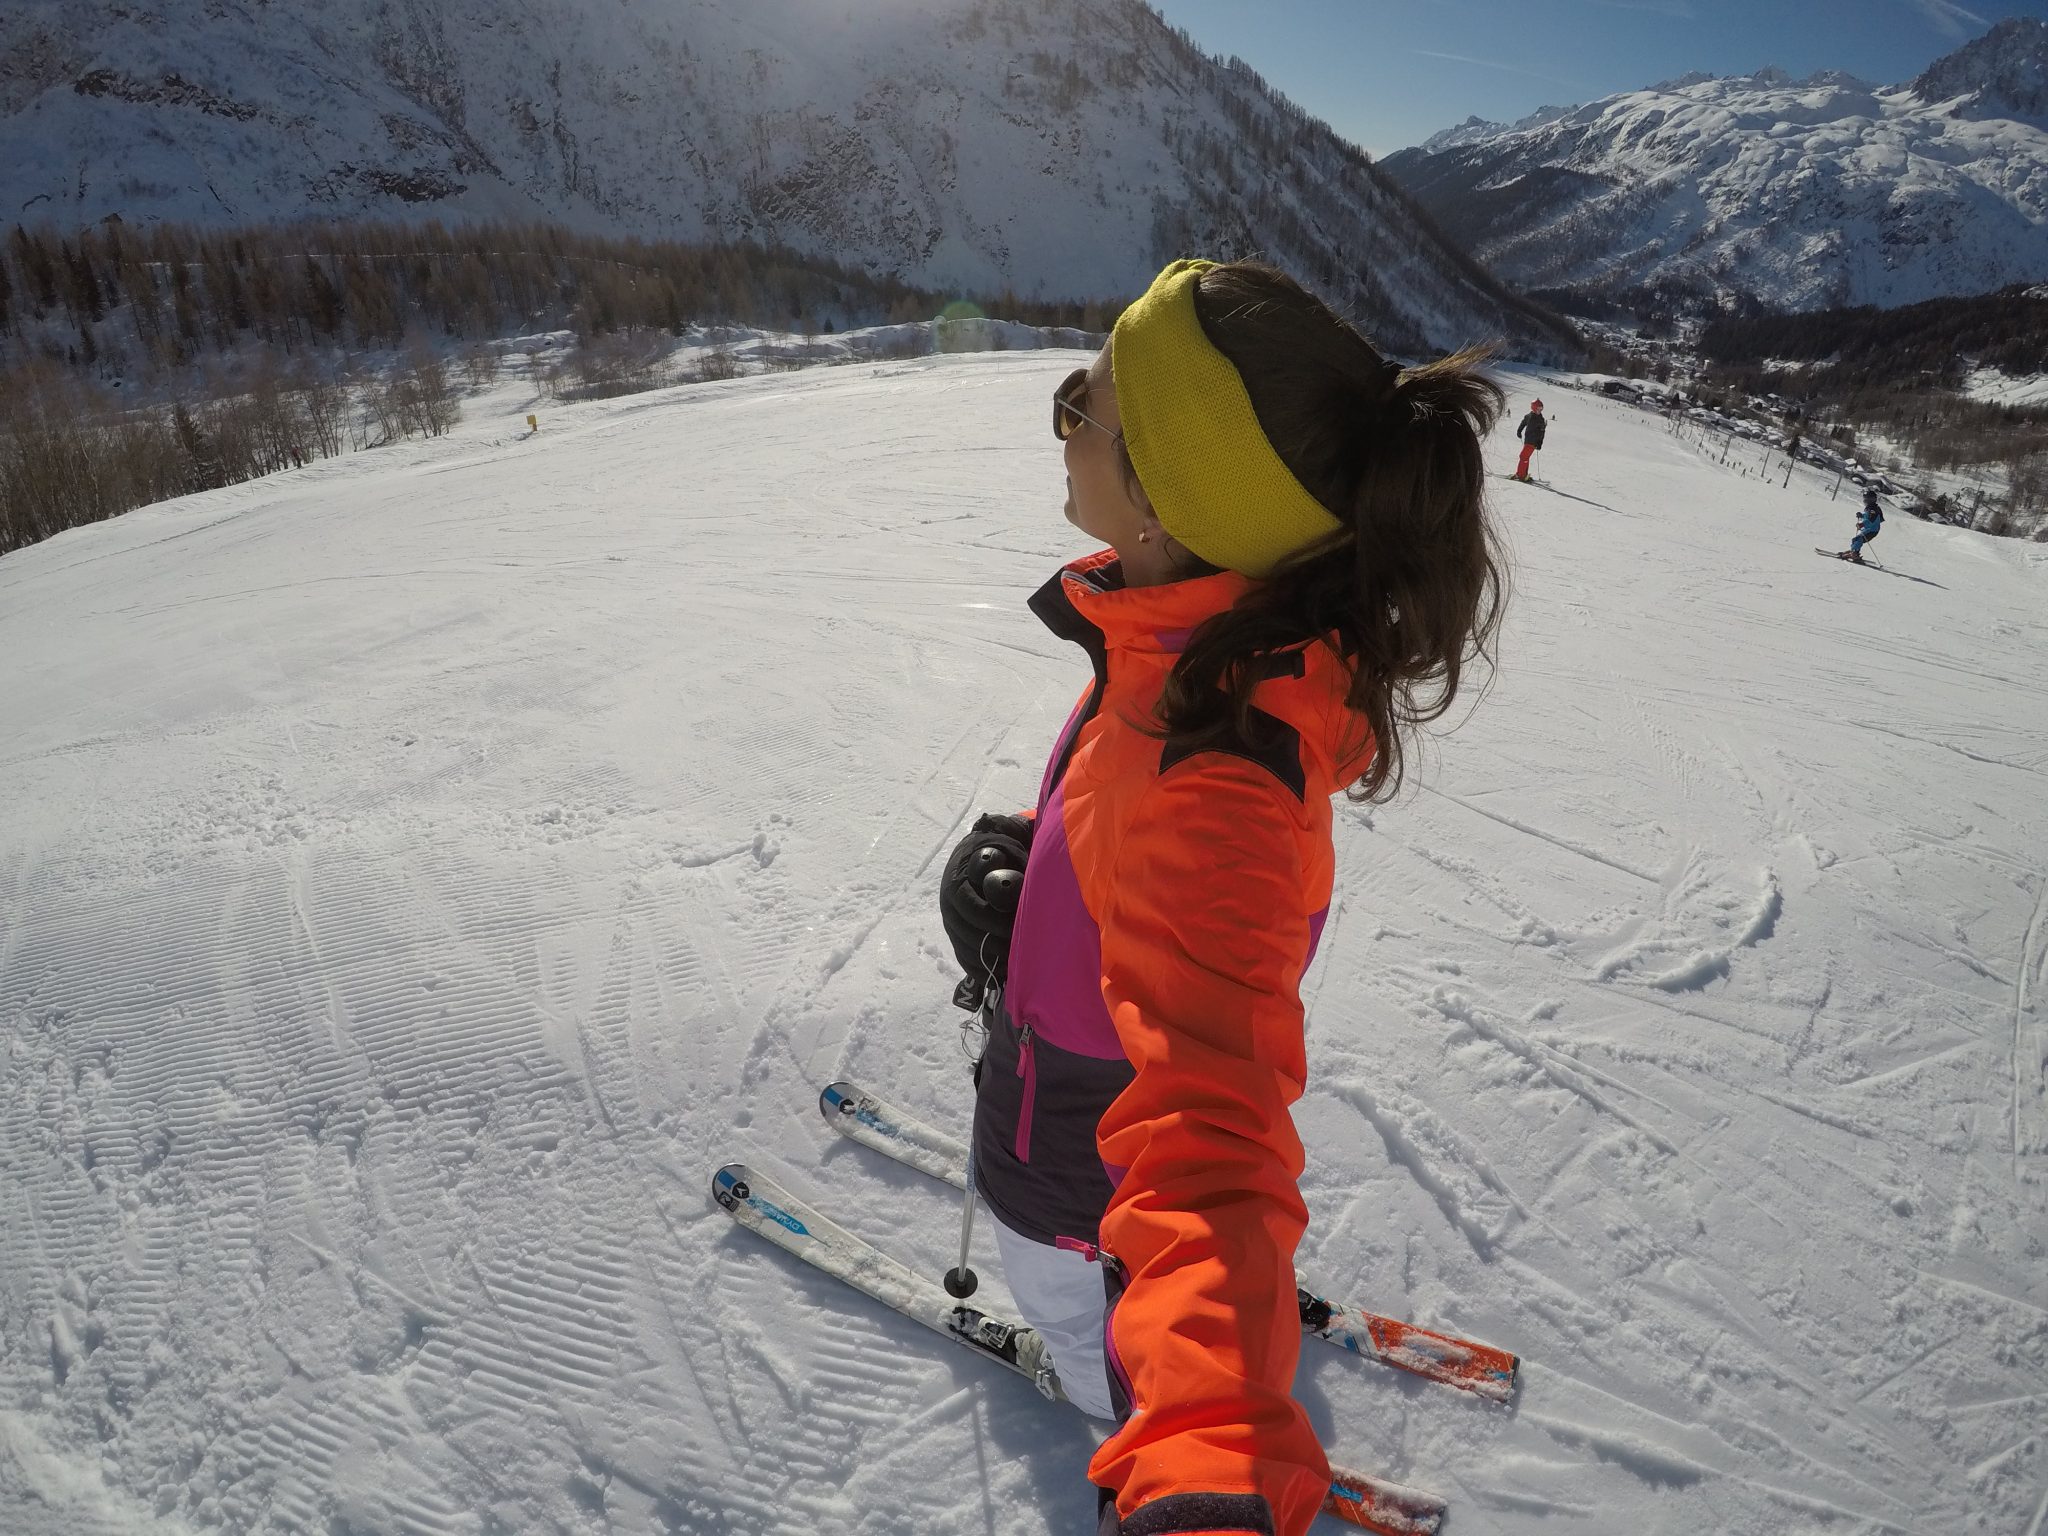 Dicas de roupas para a neve e esportes de inverno (ski e snowboard)